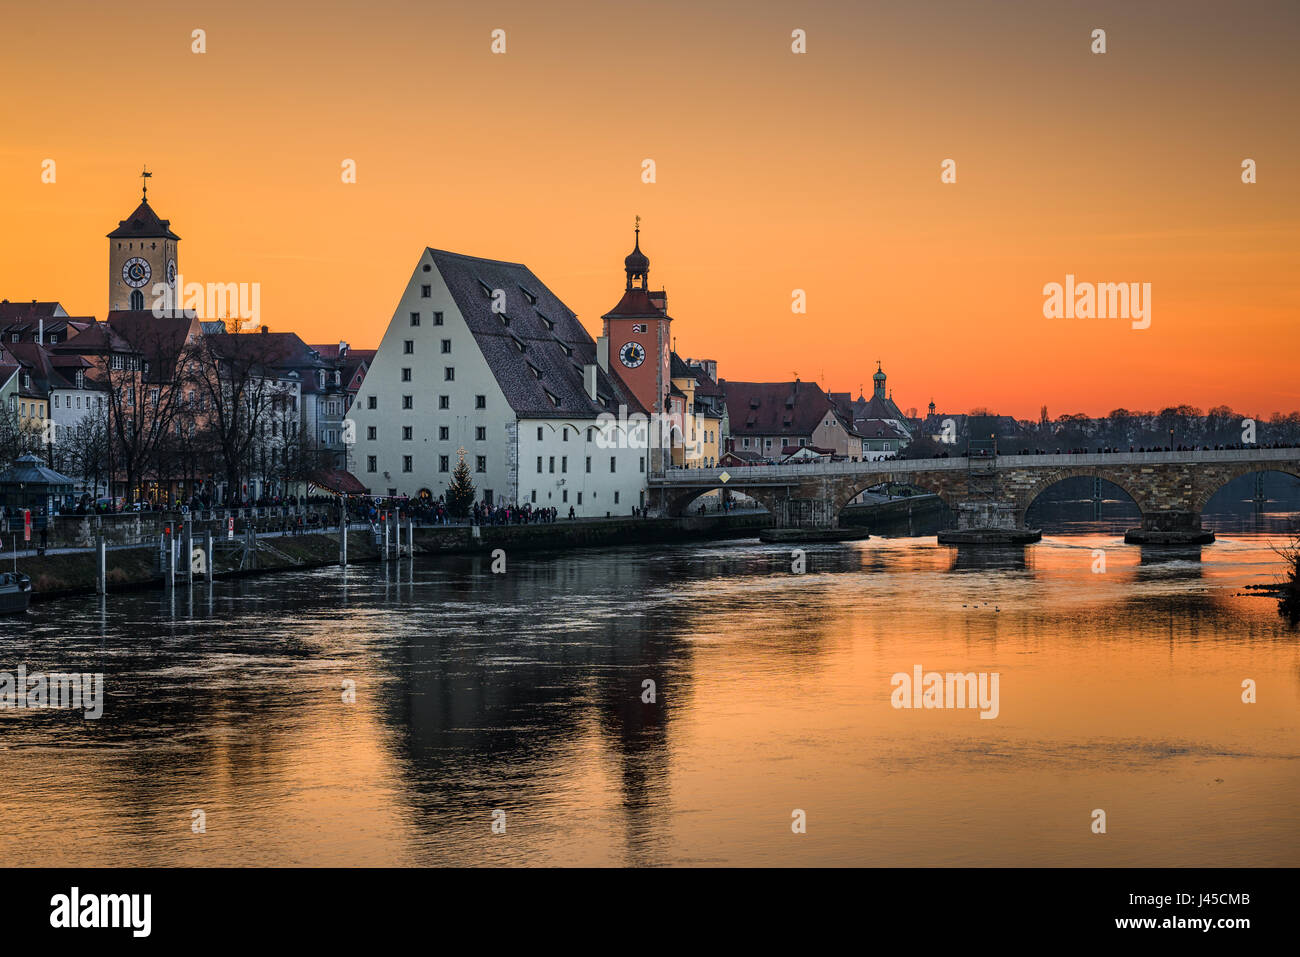 La vieille ville de Ratisbonne, Allemagne au coucher du soleil Banque D'Images